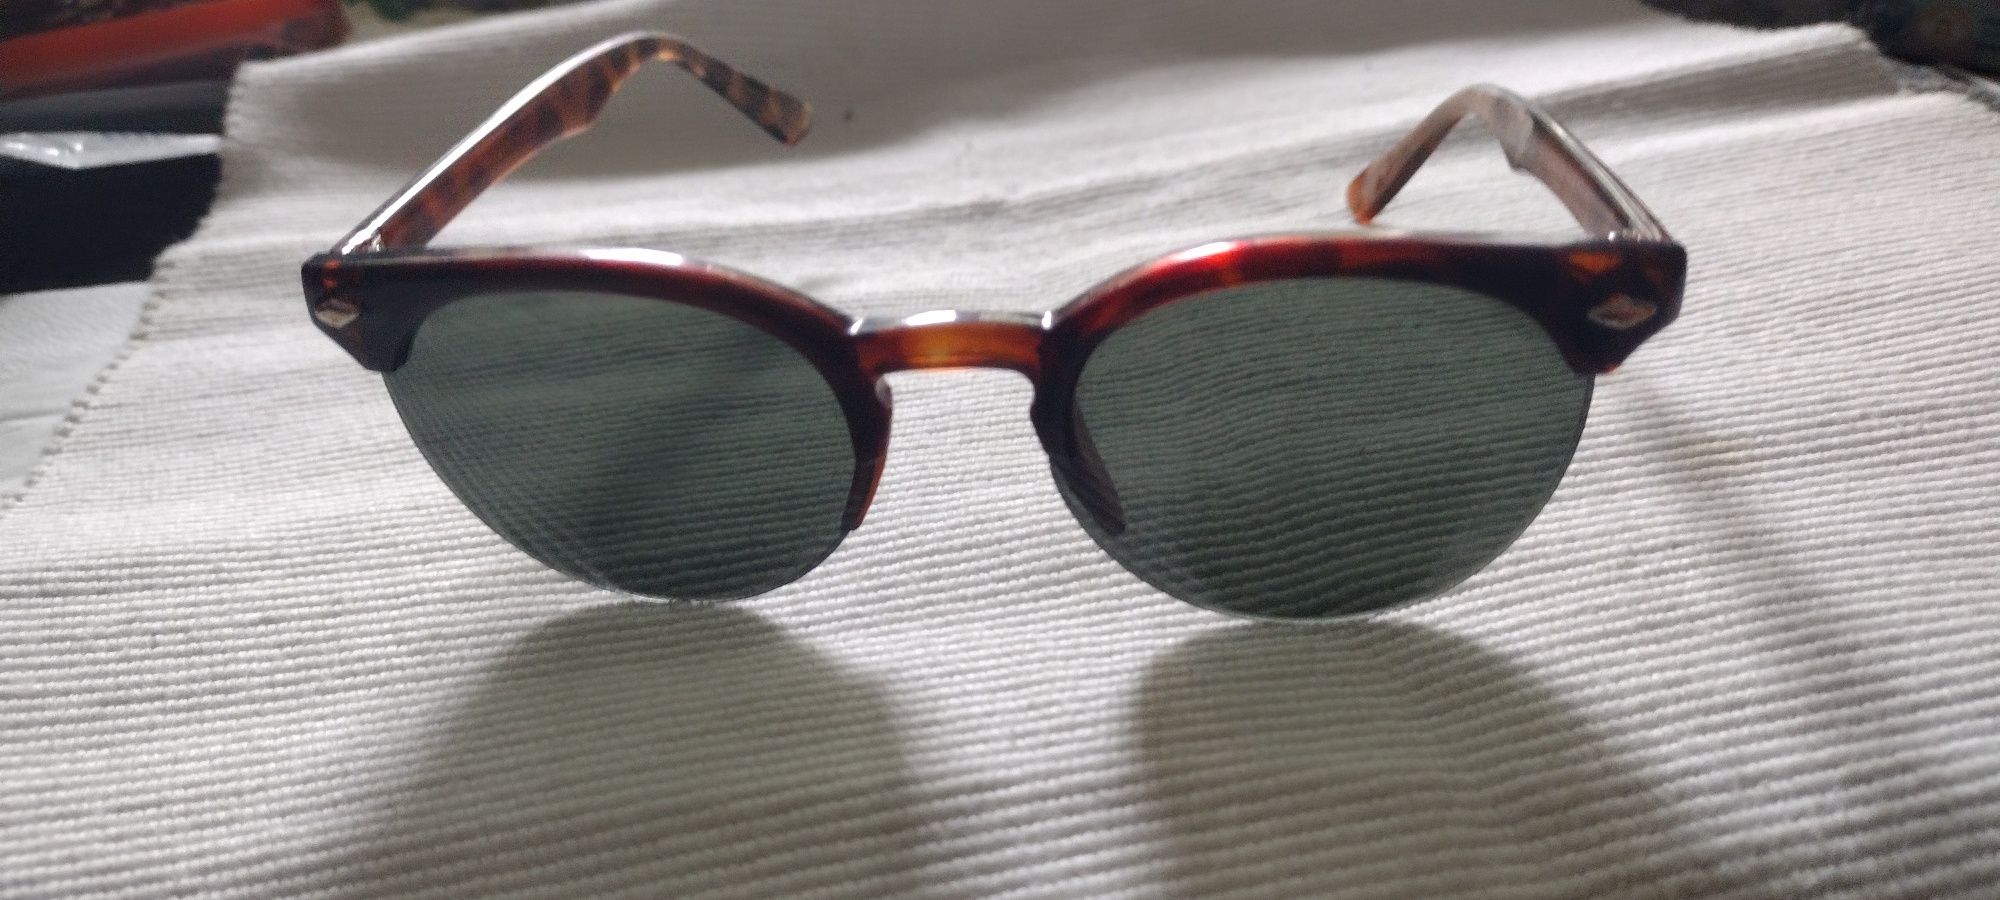 Stare okulary przeciwsloneczne